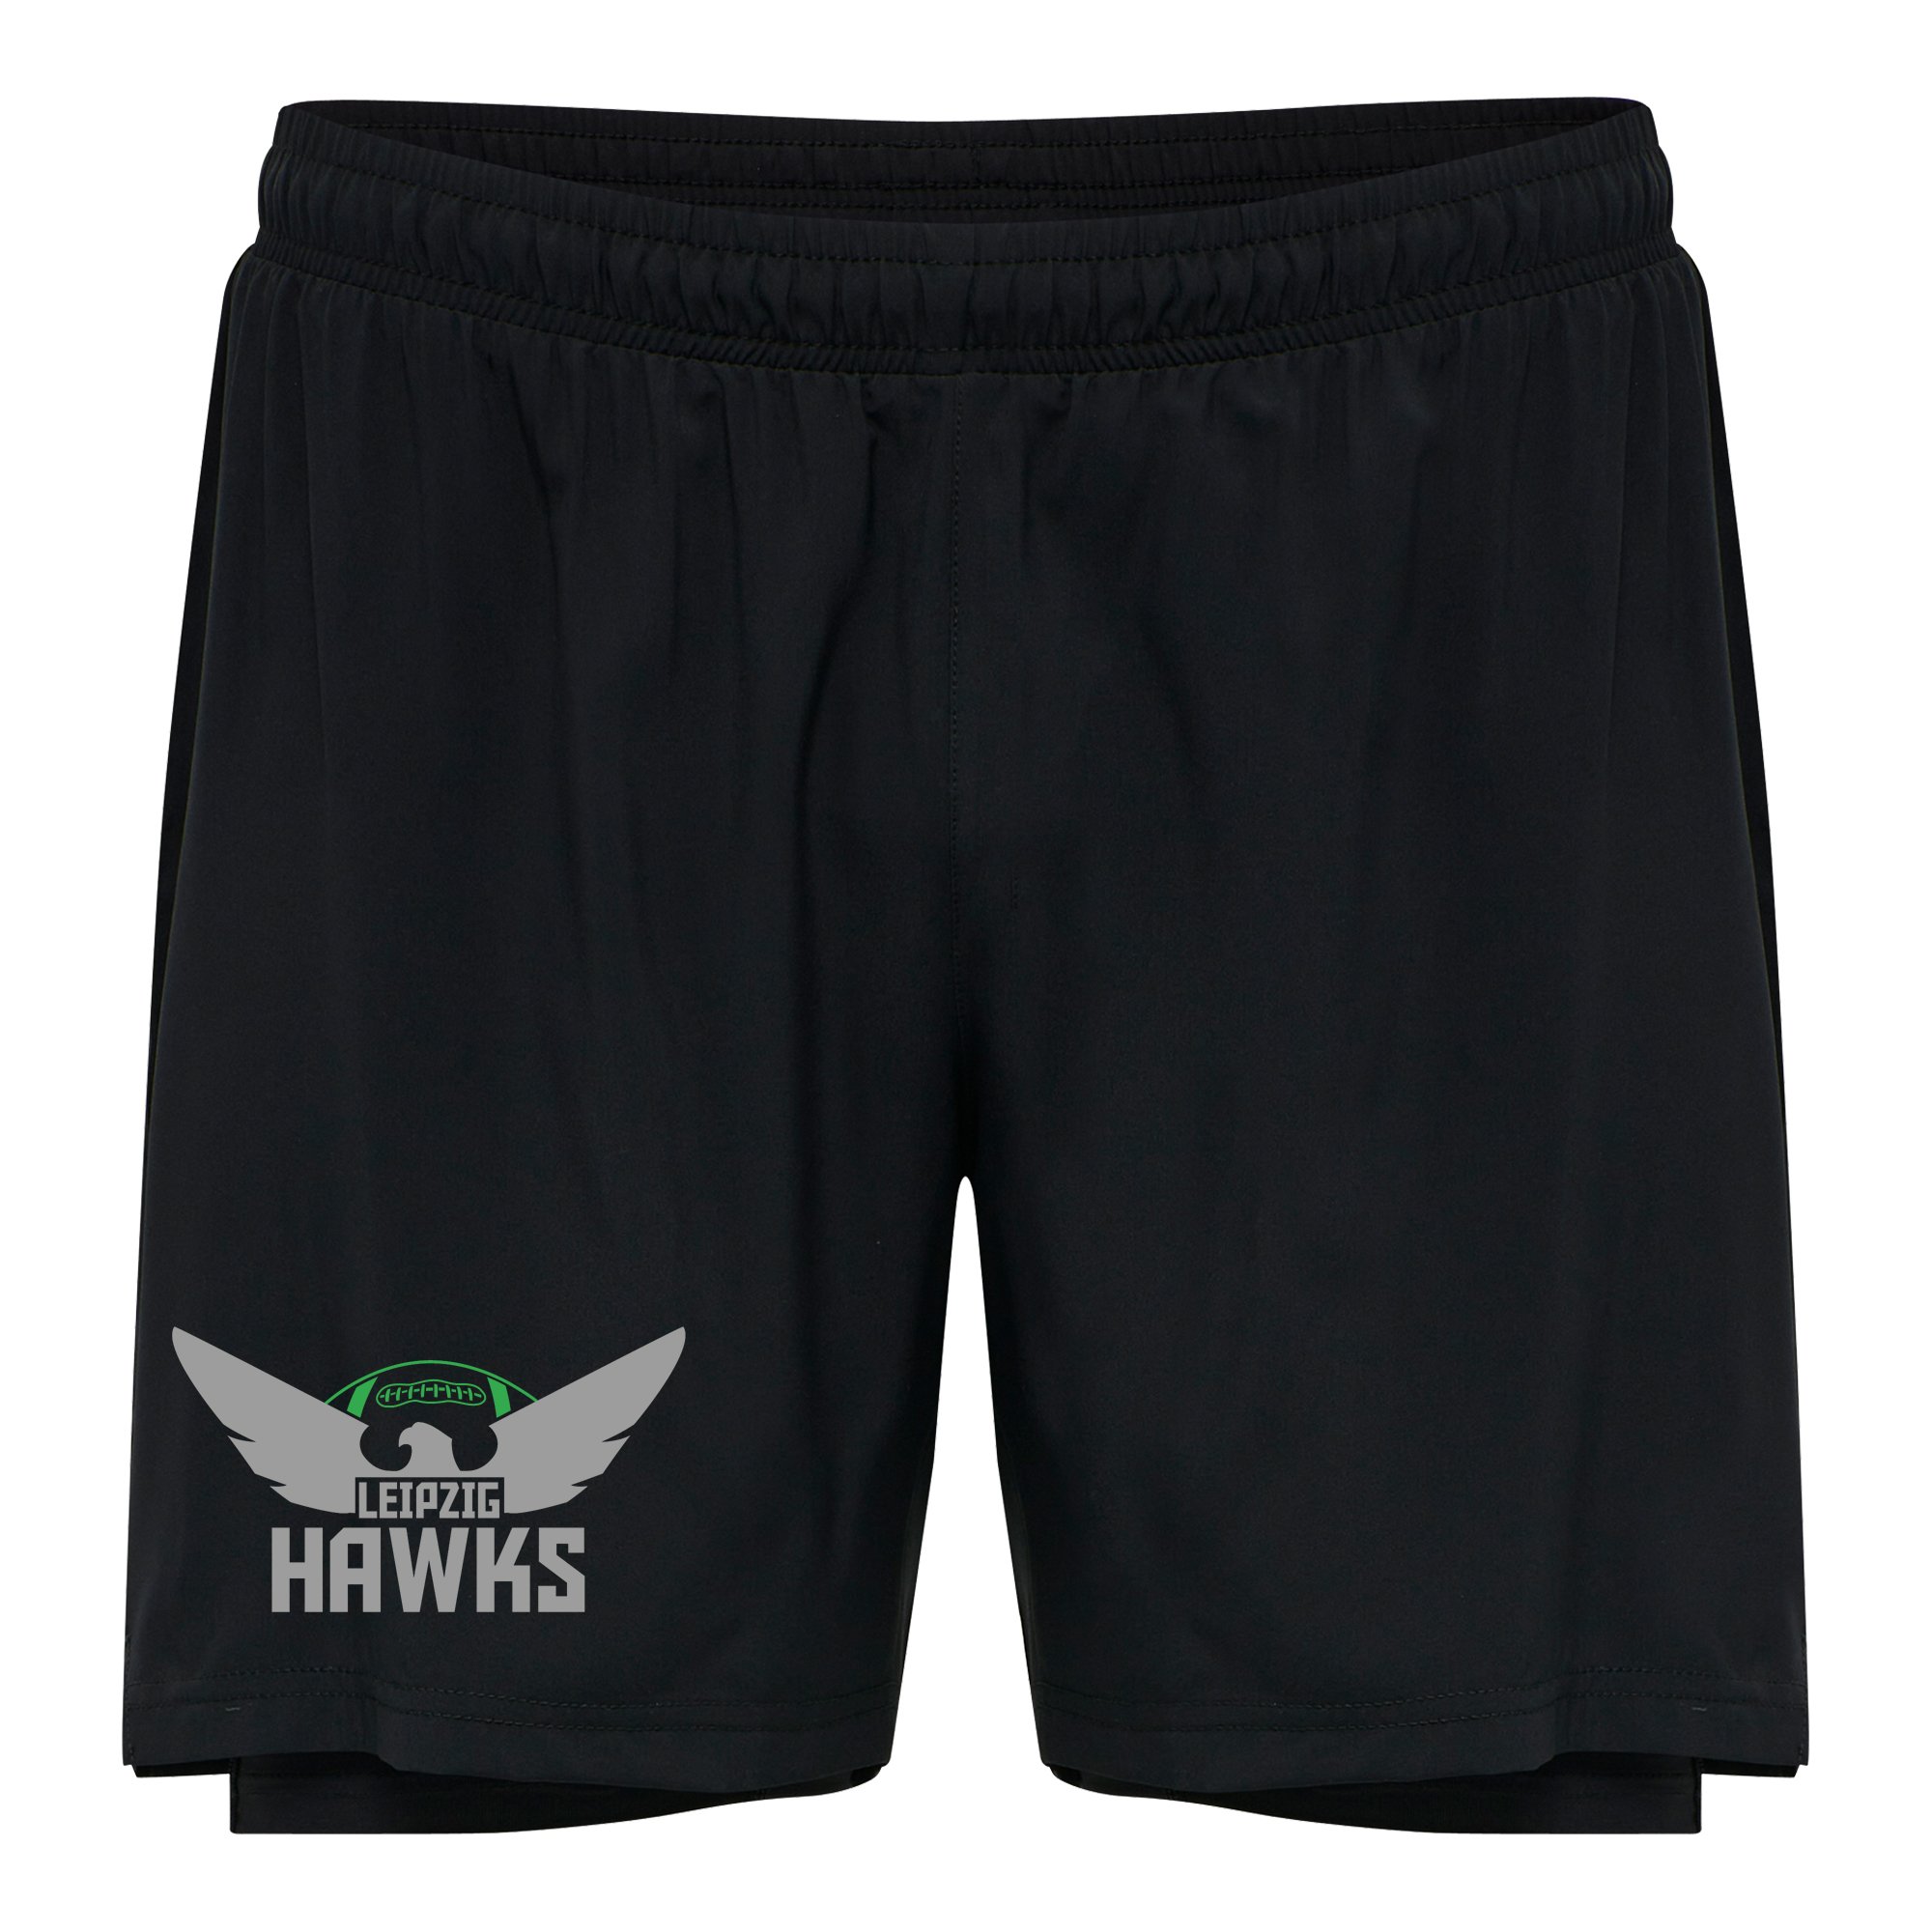 Leipzig Hawks 2-In-1 Shorts